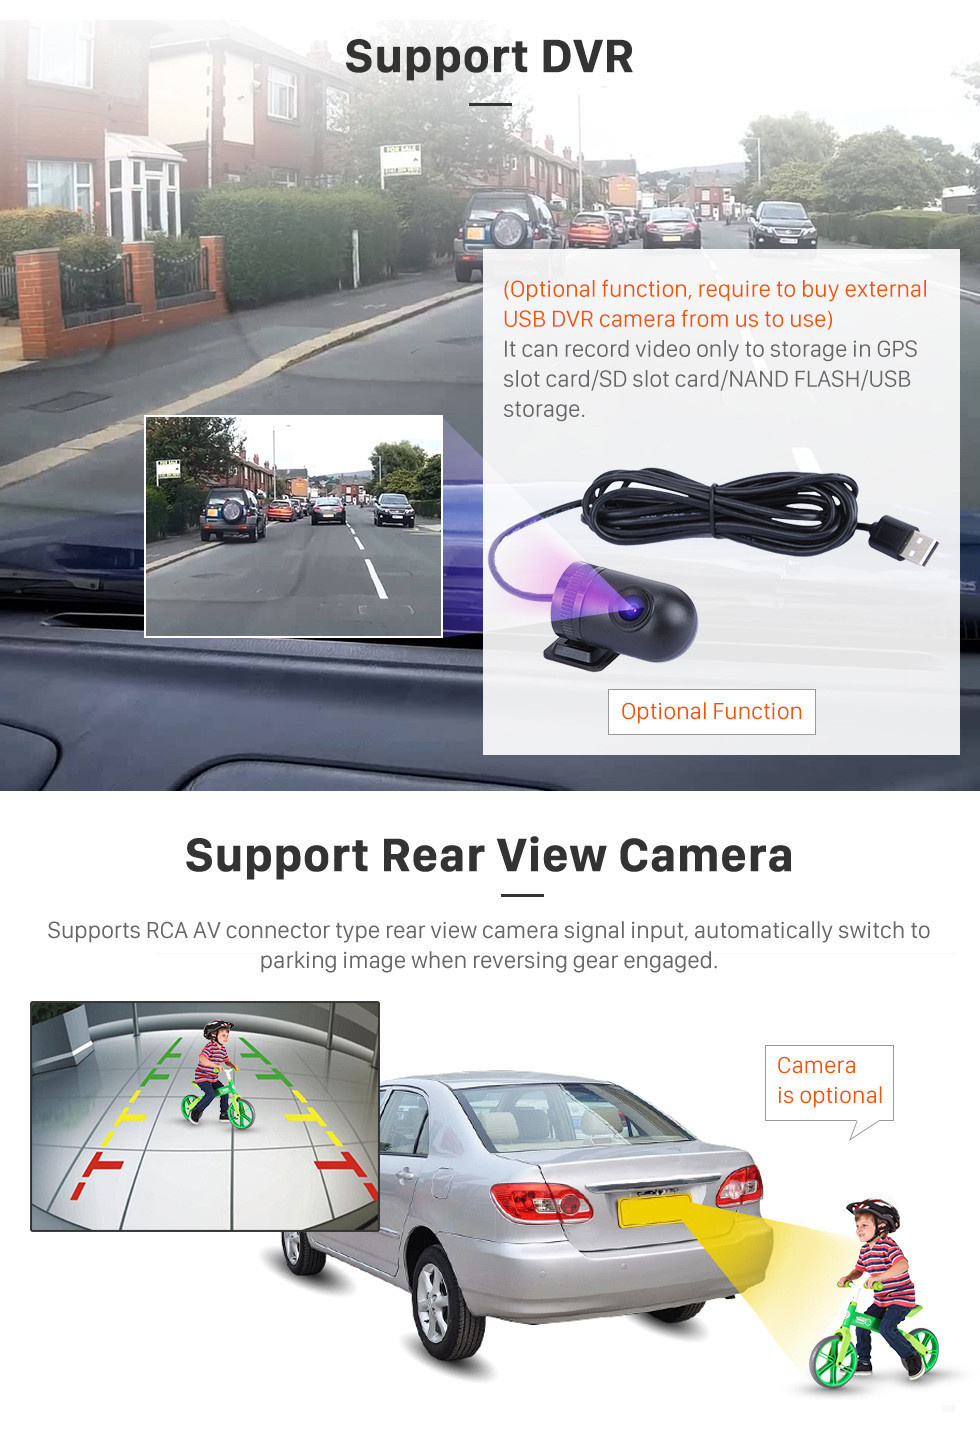 Seicane OEM 9 pouces Android 11.0 HD Radio Bluetooth à écran tactile pour 2008-2012 Nissan Teana ALTIMA Auto A / C avec navigation GPS USB FM auto stéréo Wifi AUX Prise en charge DVR TPMS Caméra de recul OBD2 SWC